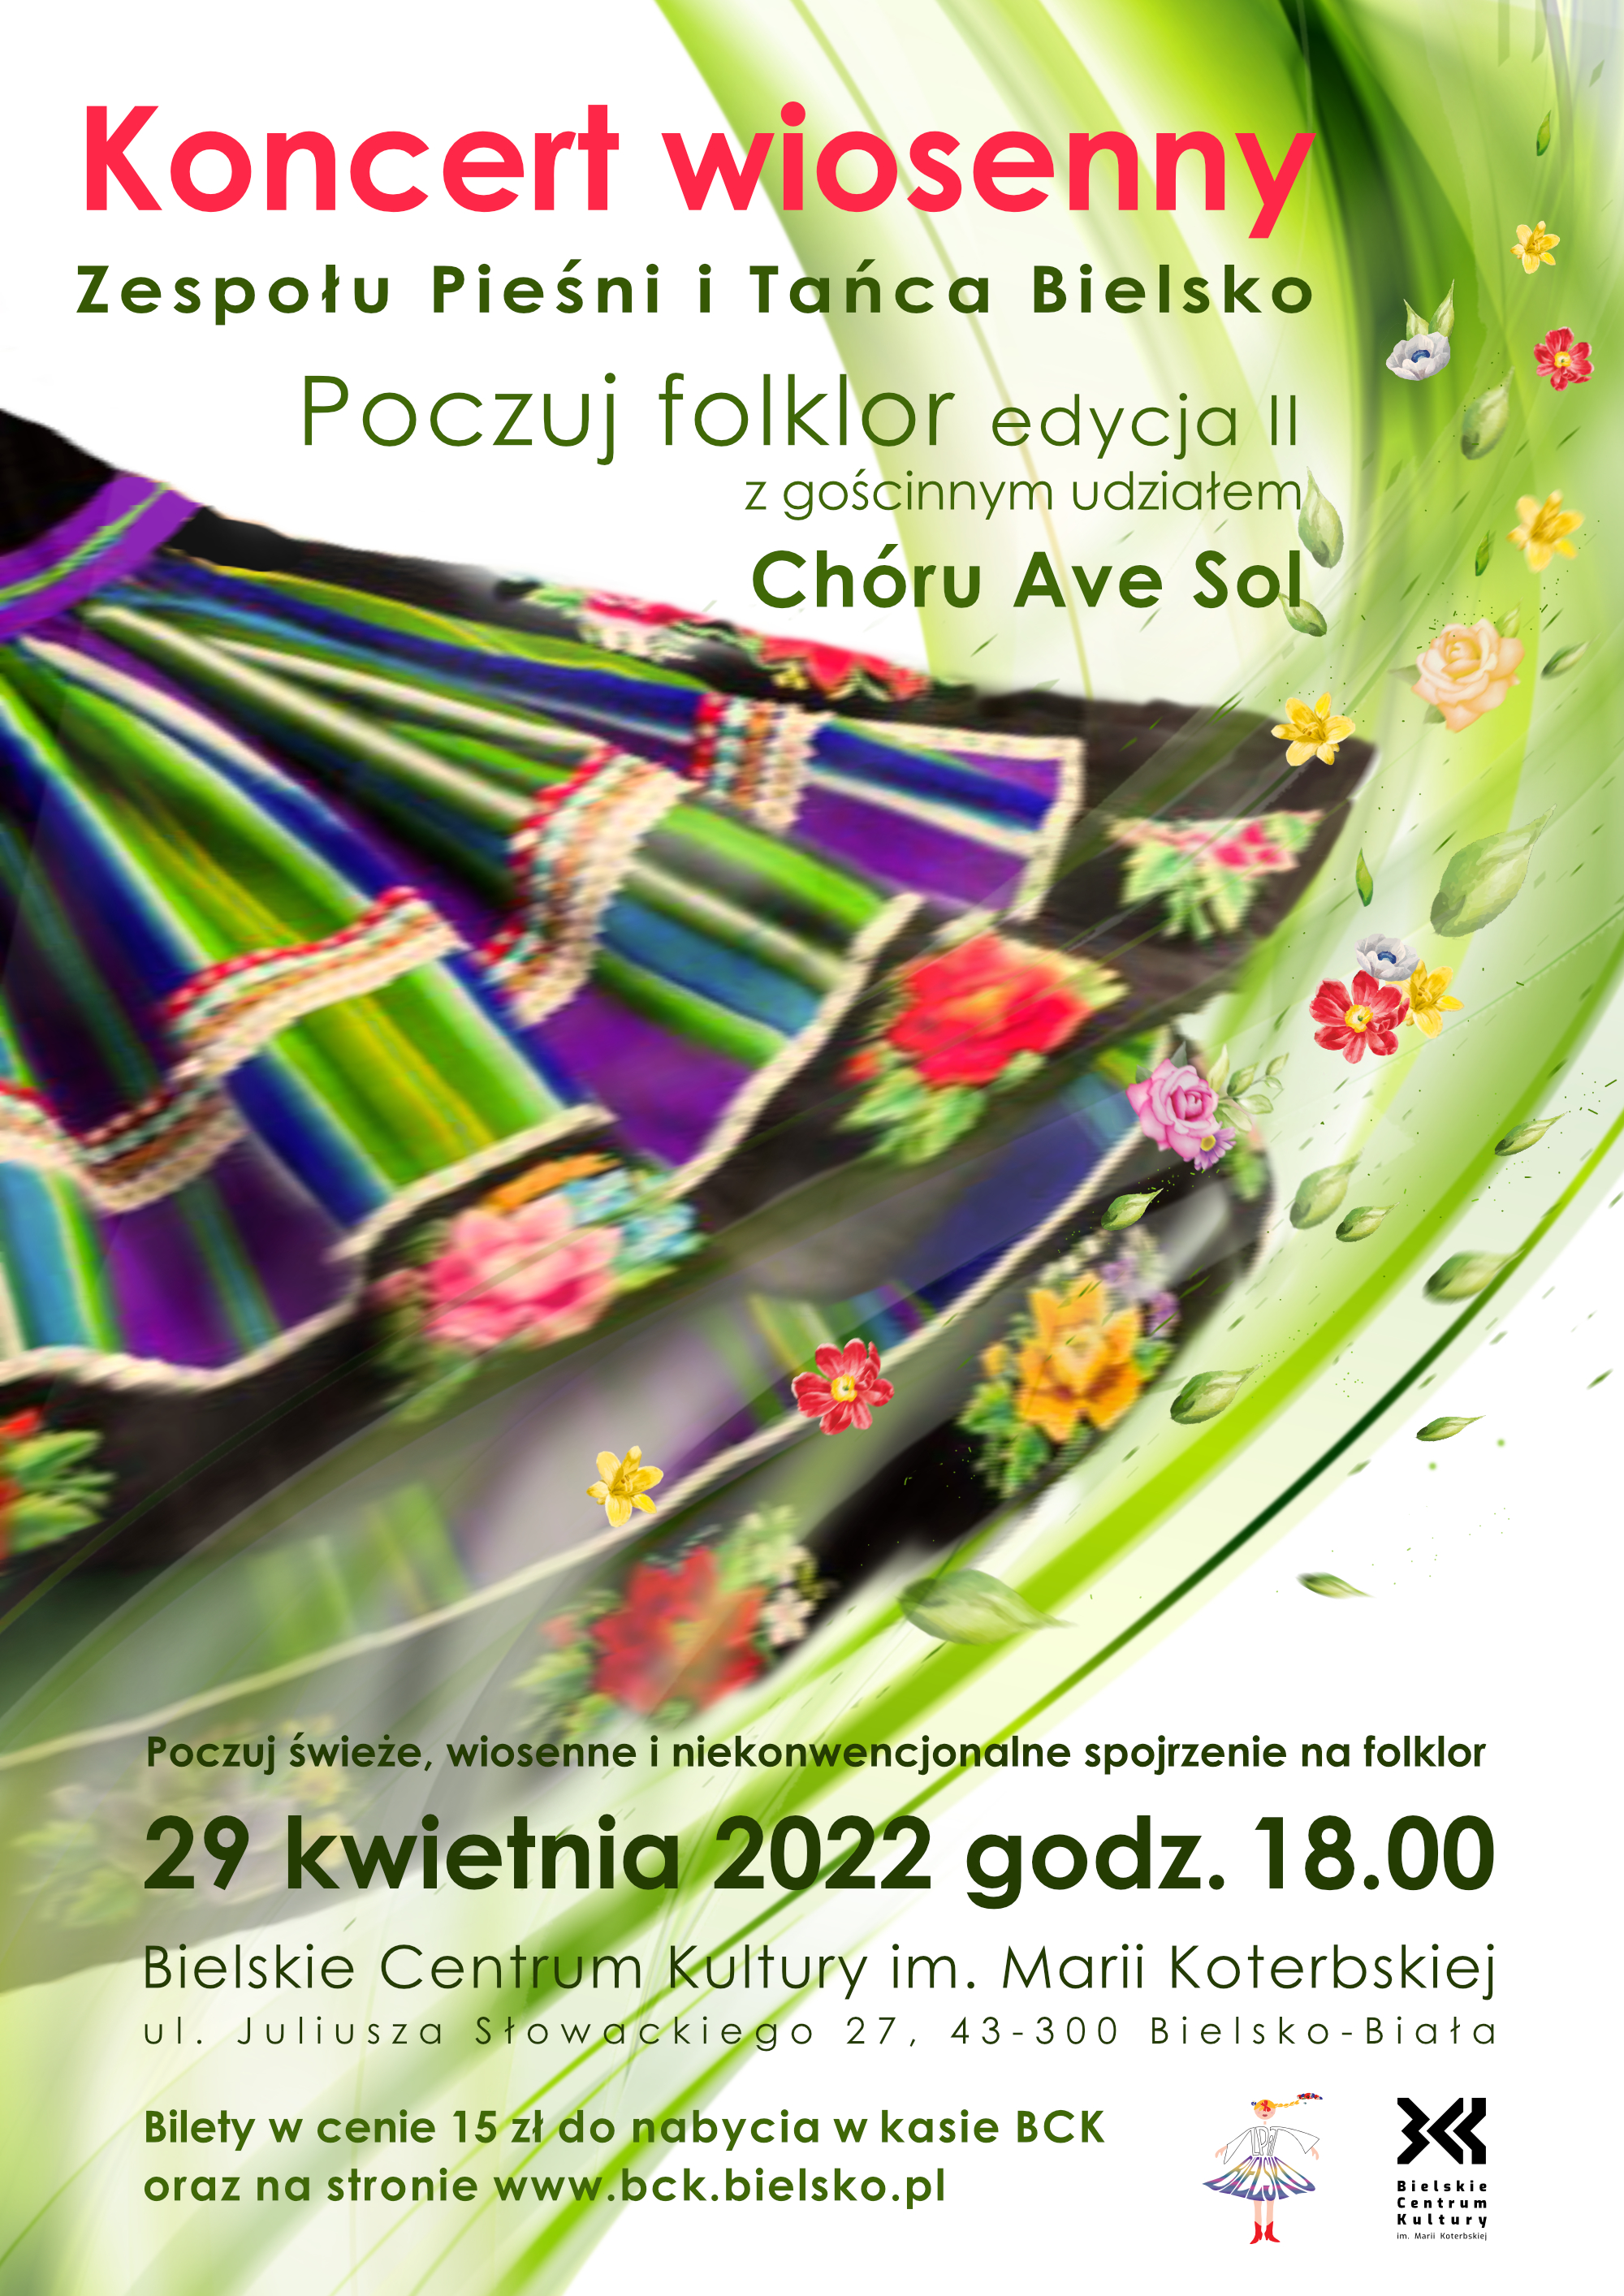  Poczuj folklor: koncert wiosenny Na zdjęciu plakat koncertu